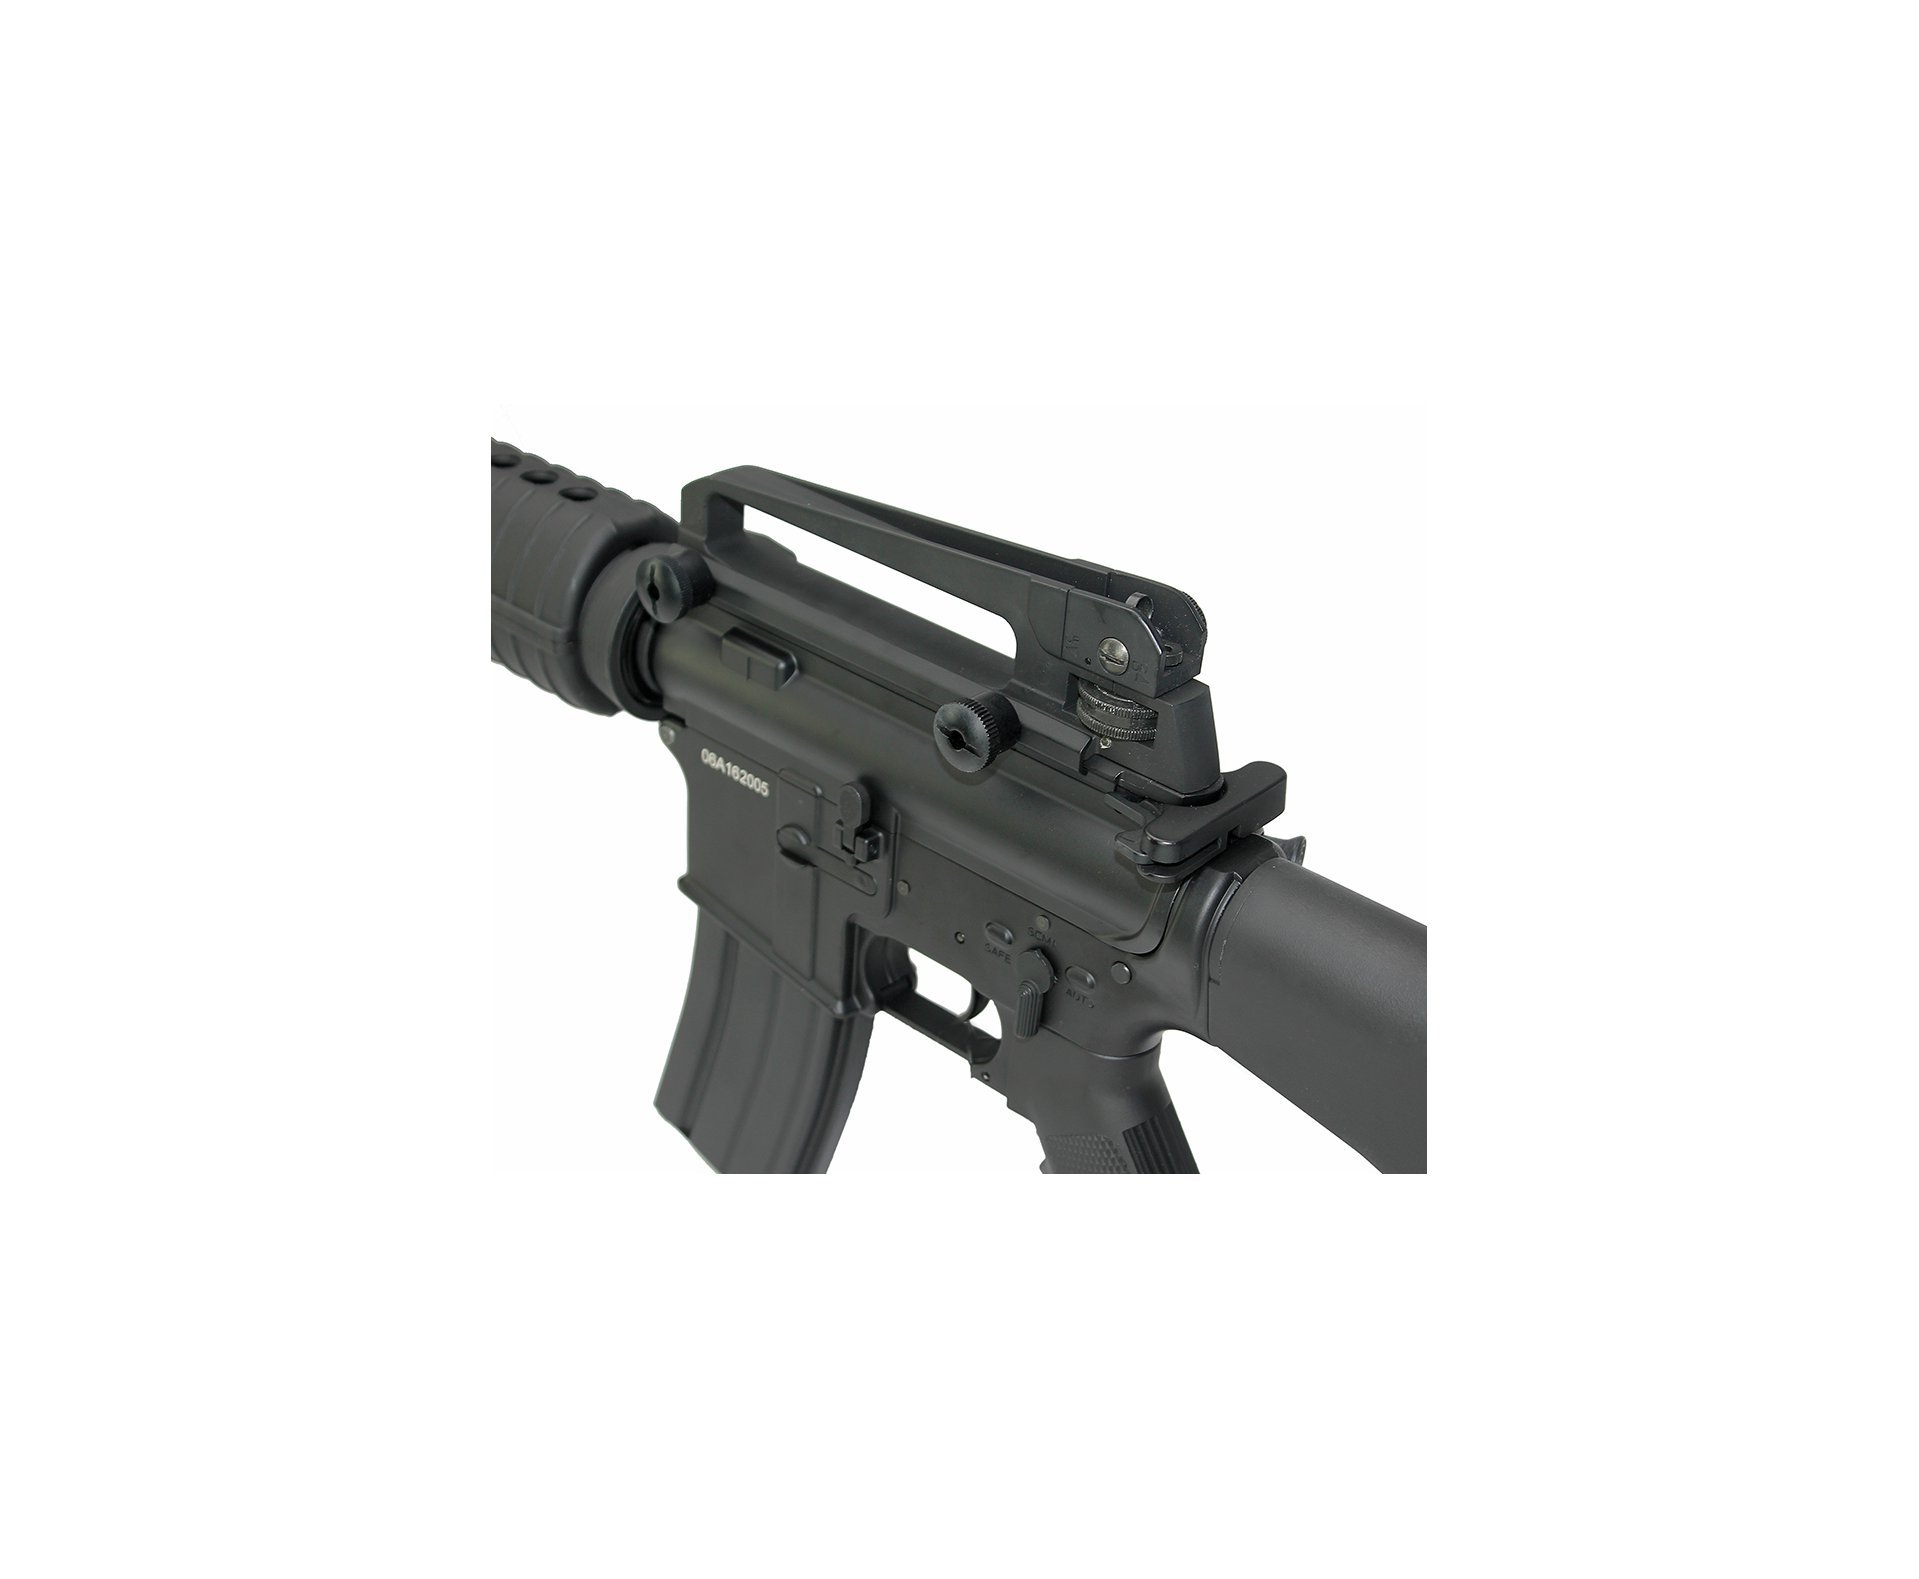 Rifle De Airsoft M16 Full Metal Cal 6mm Cm009 Bivolt - Cyma